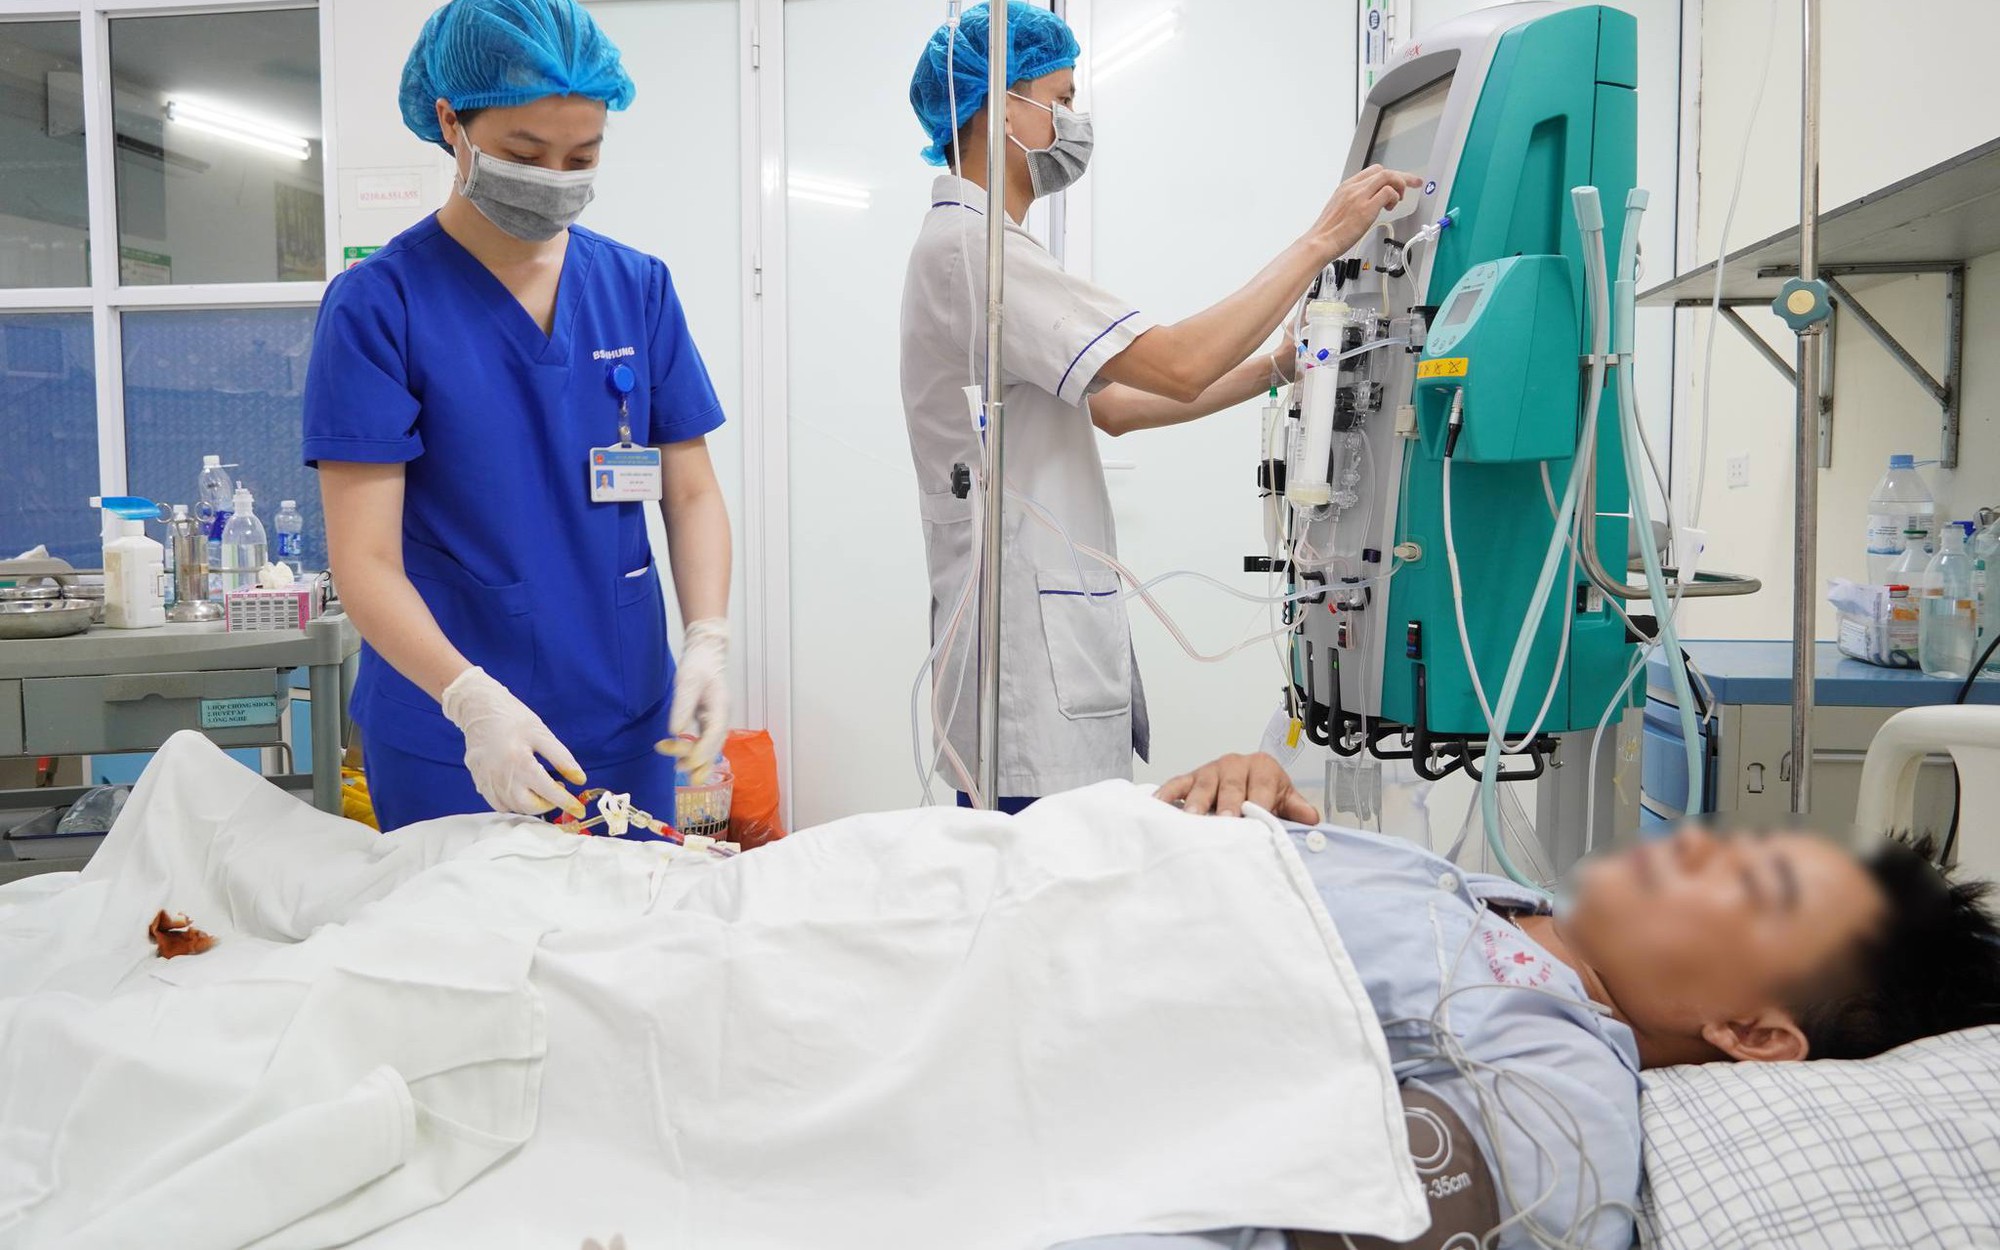 Đau bụng, người đàn ông 36 tuổi ở Phú Thọ nhập viện gấp vì phát hiện mỡ máu tăng hơn 40 lần